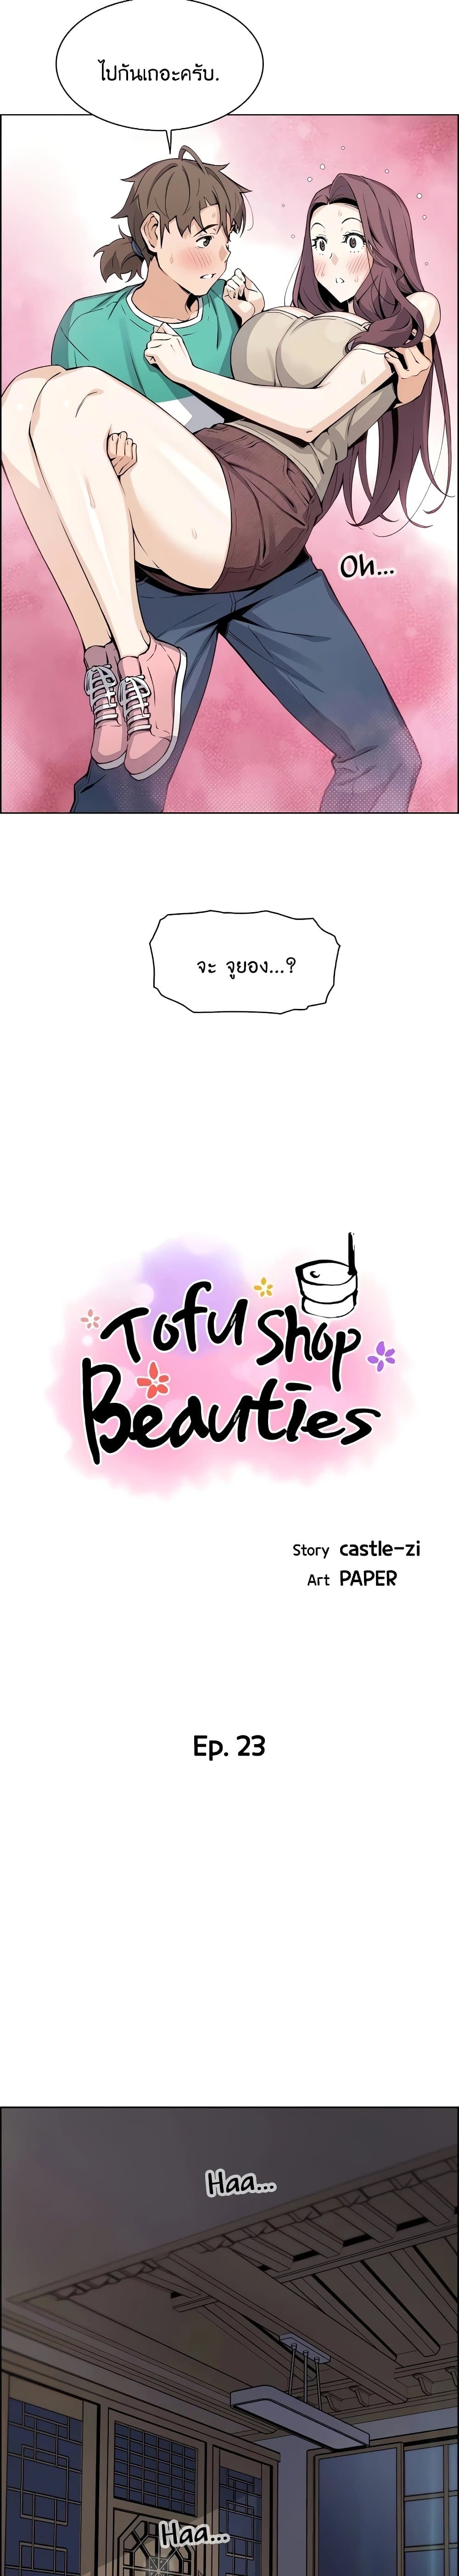 Tofu Shop Beauties 23-23